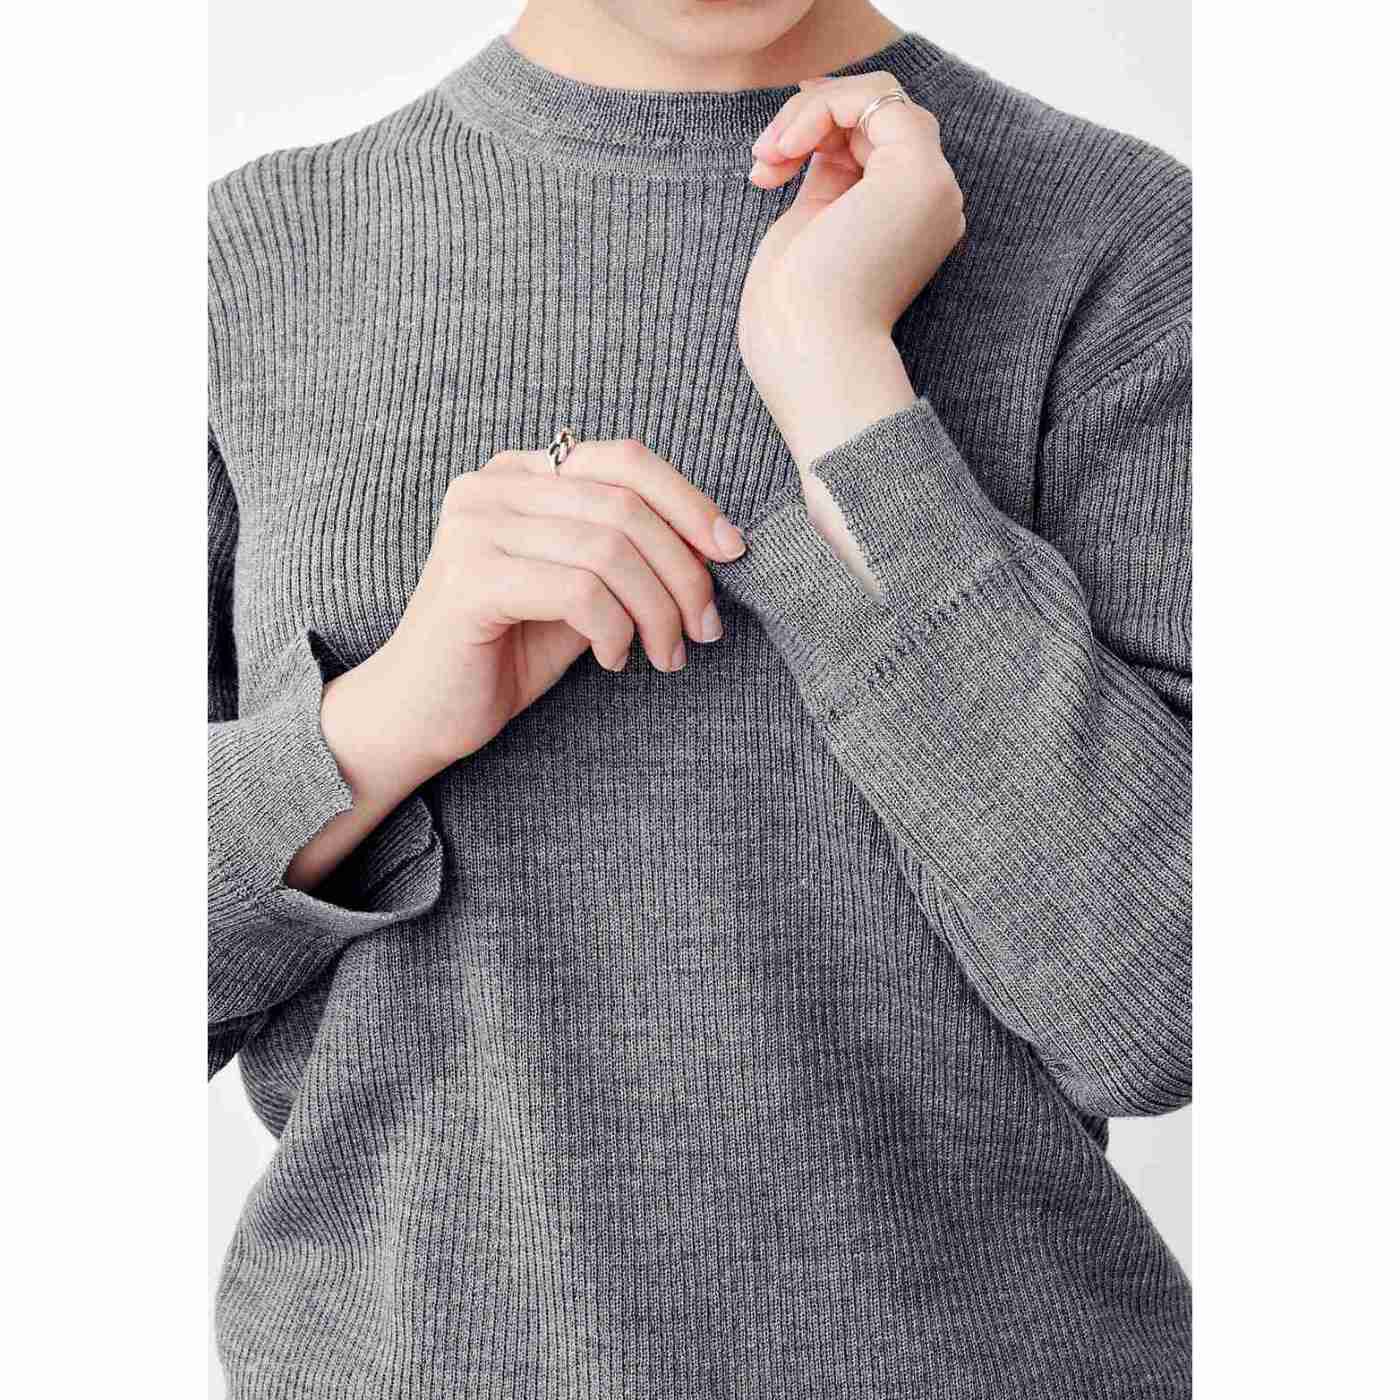 Real Stock|【高山都さんコラボ】MEDE19F　マイベーシックニットプルオーバー〈グレー〉|衿や袖のリブにはガーター編みをプラスしてアクセントに。プルオーバーの袖口にはスリット入り。